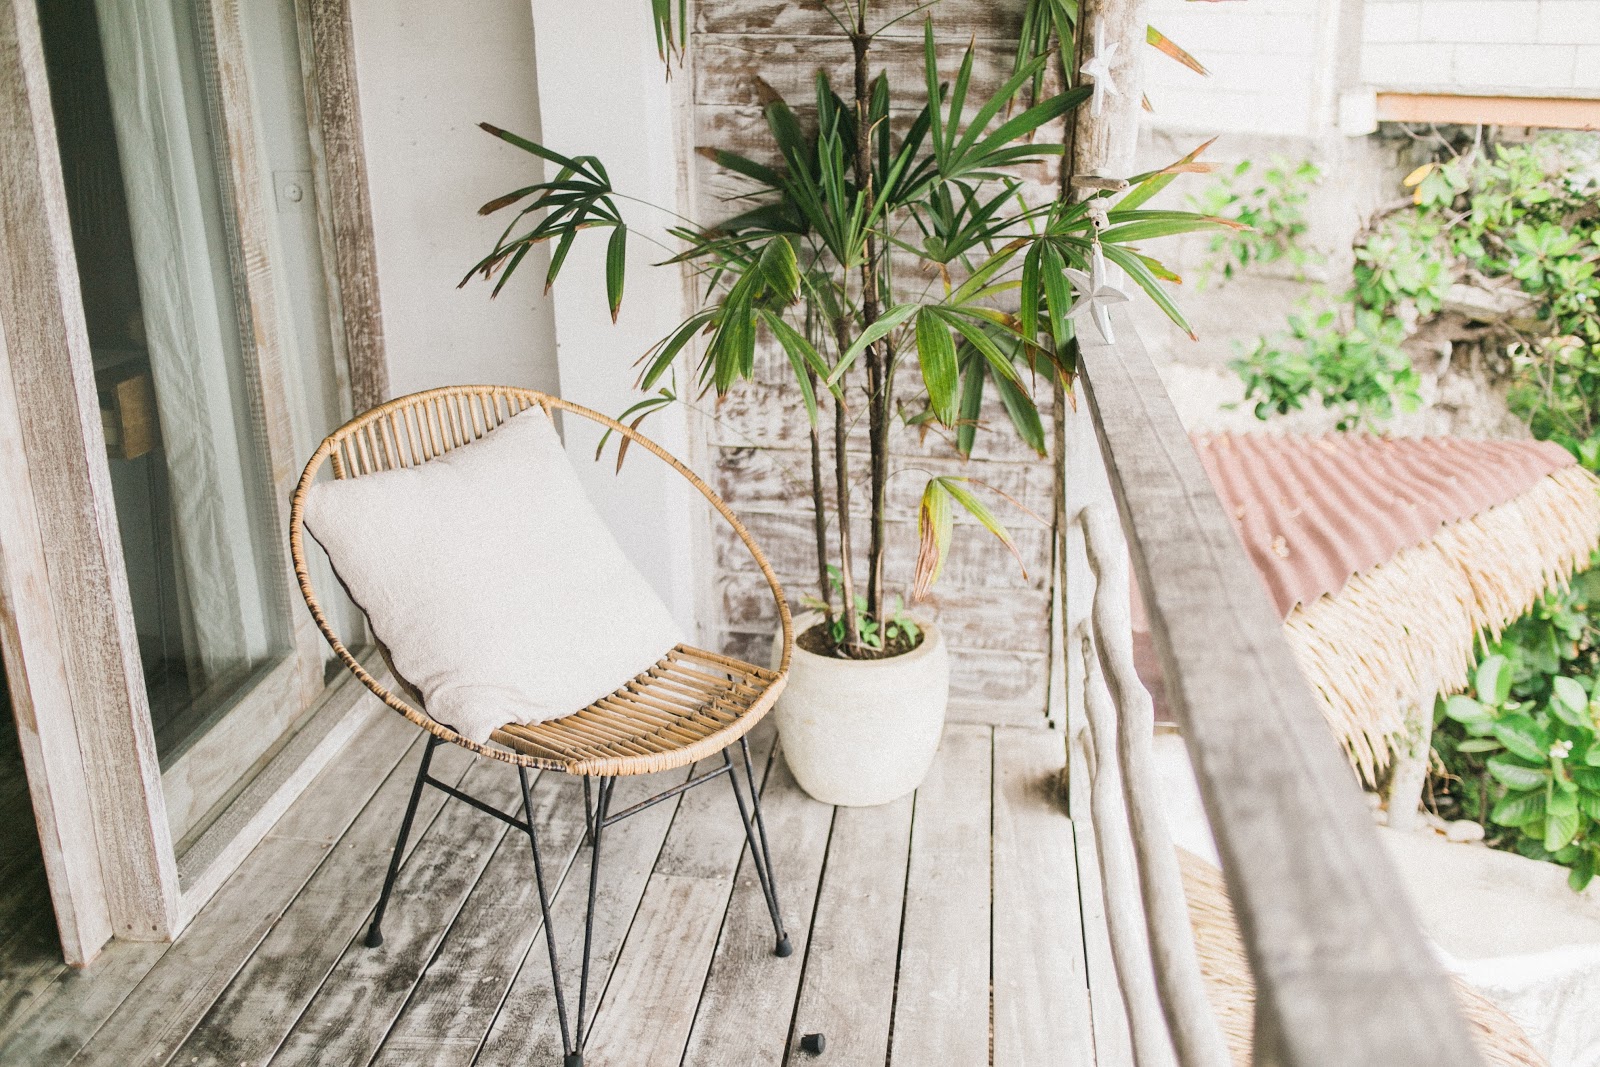 Geef je tuin of balkon meer sfeer met deze tips!